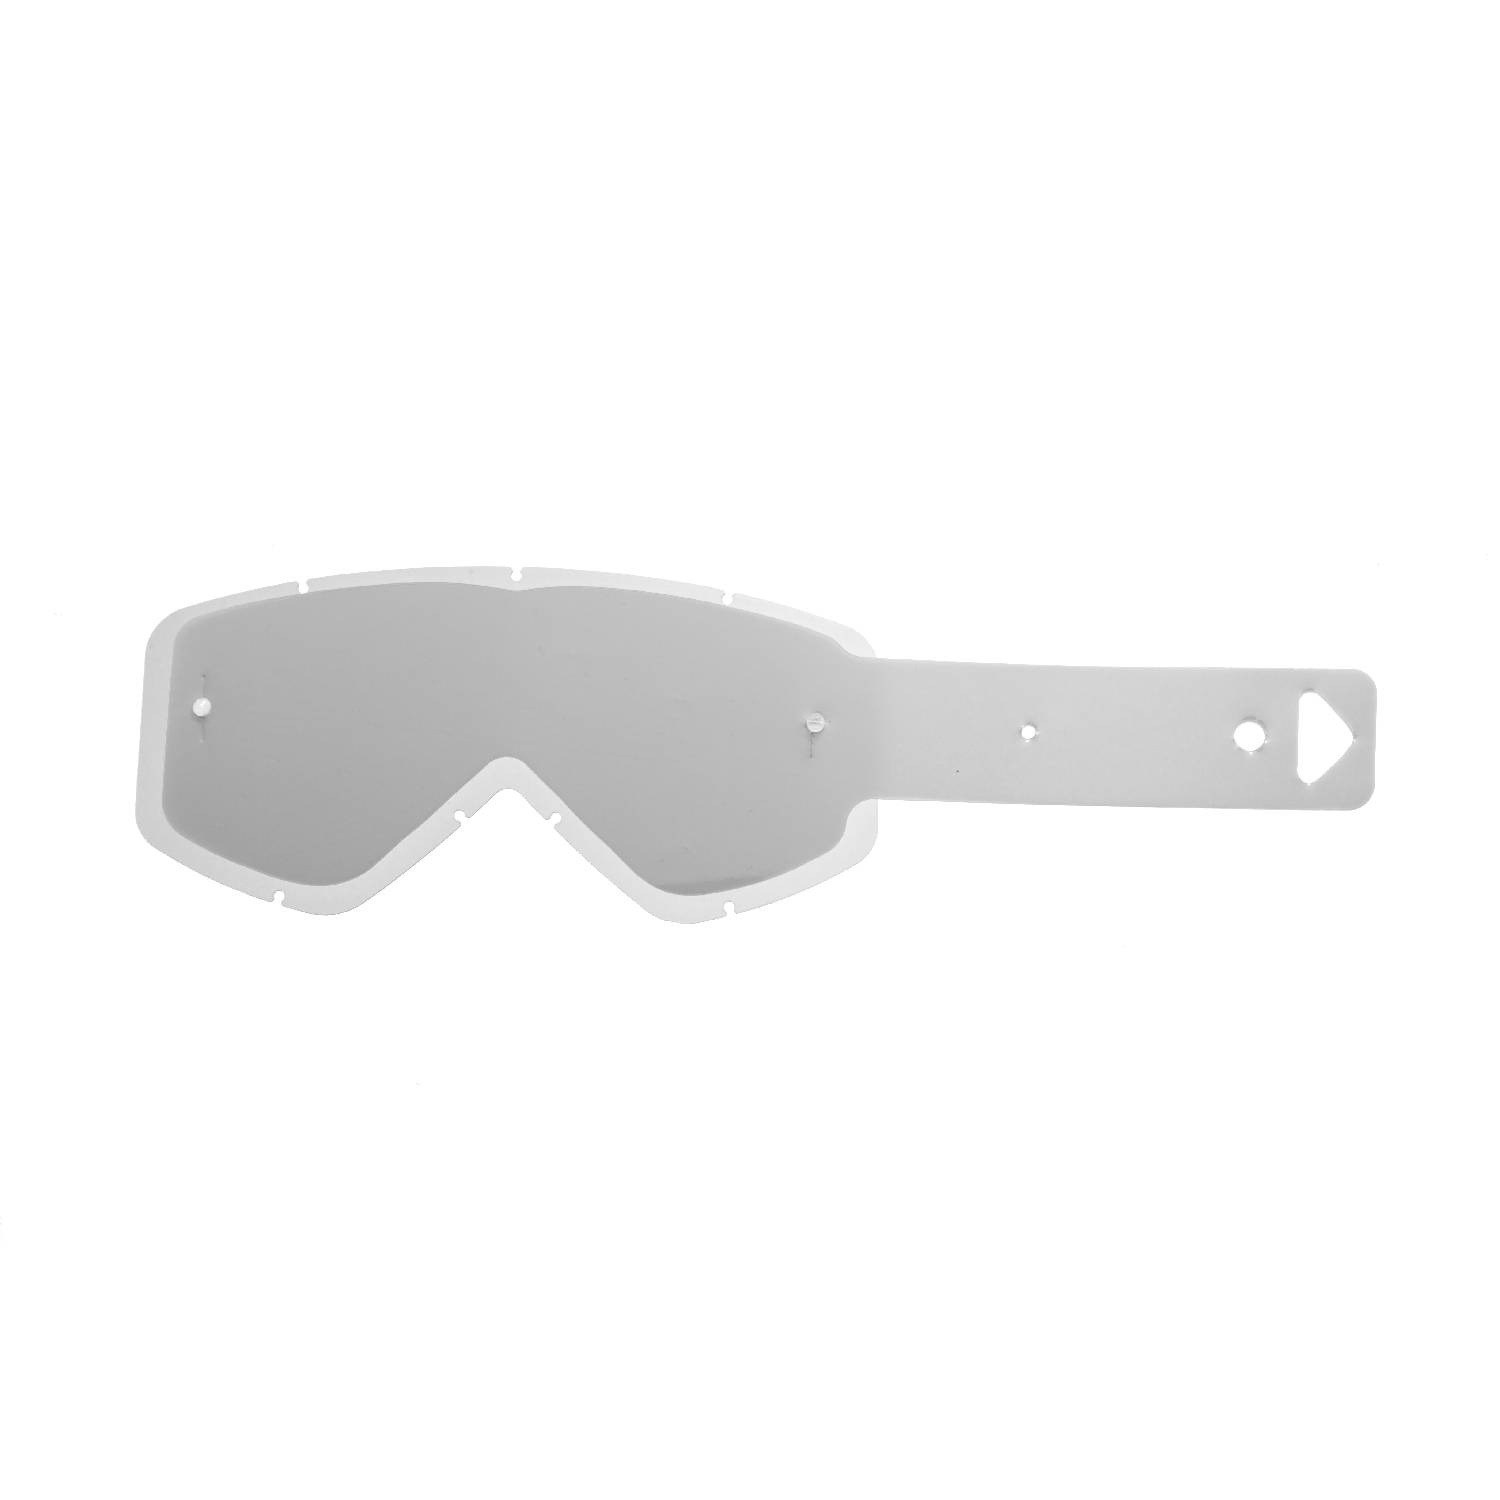 Lente trasparente + 10 Strappi (Combo) compatibile per occhiale/maschera Smith Fuel / Intake / V1 / V2